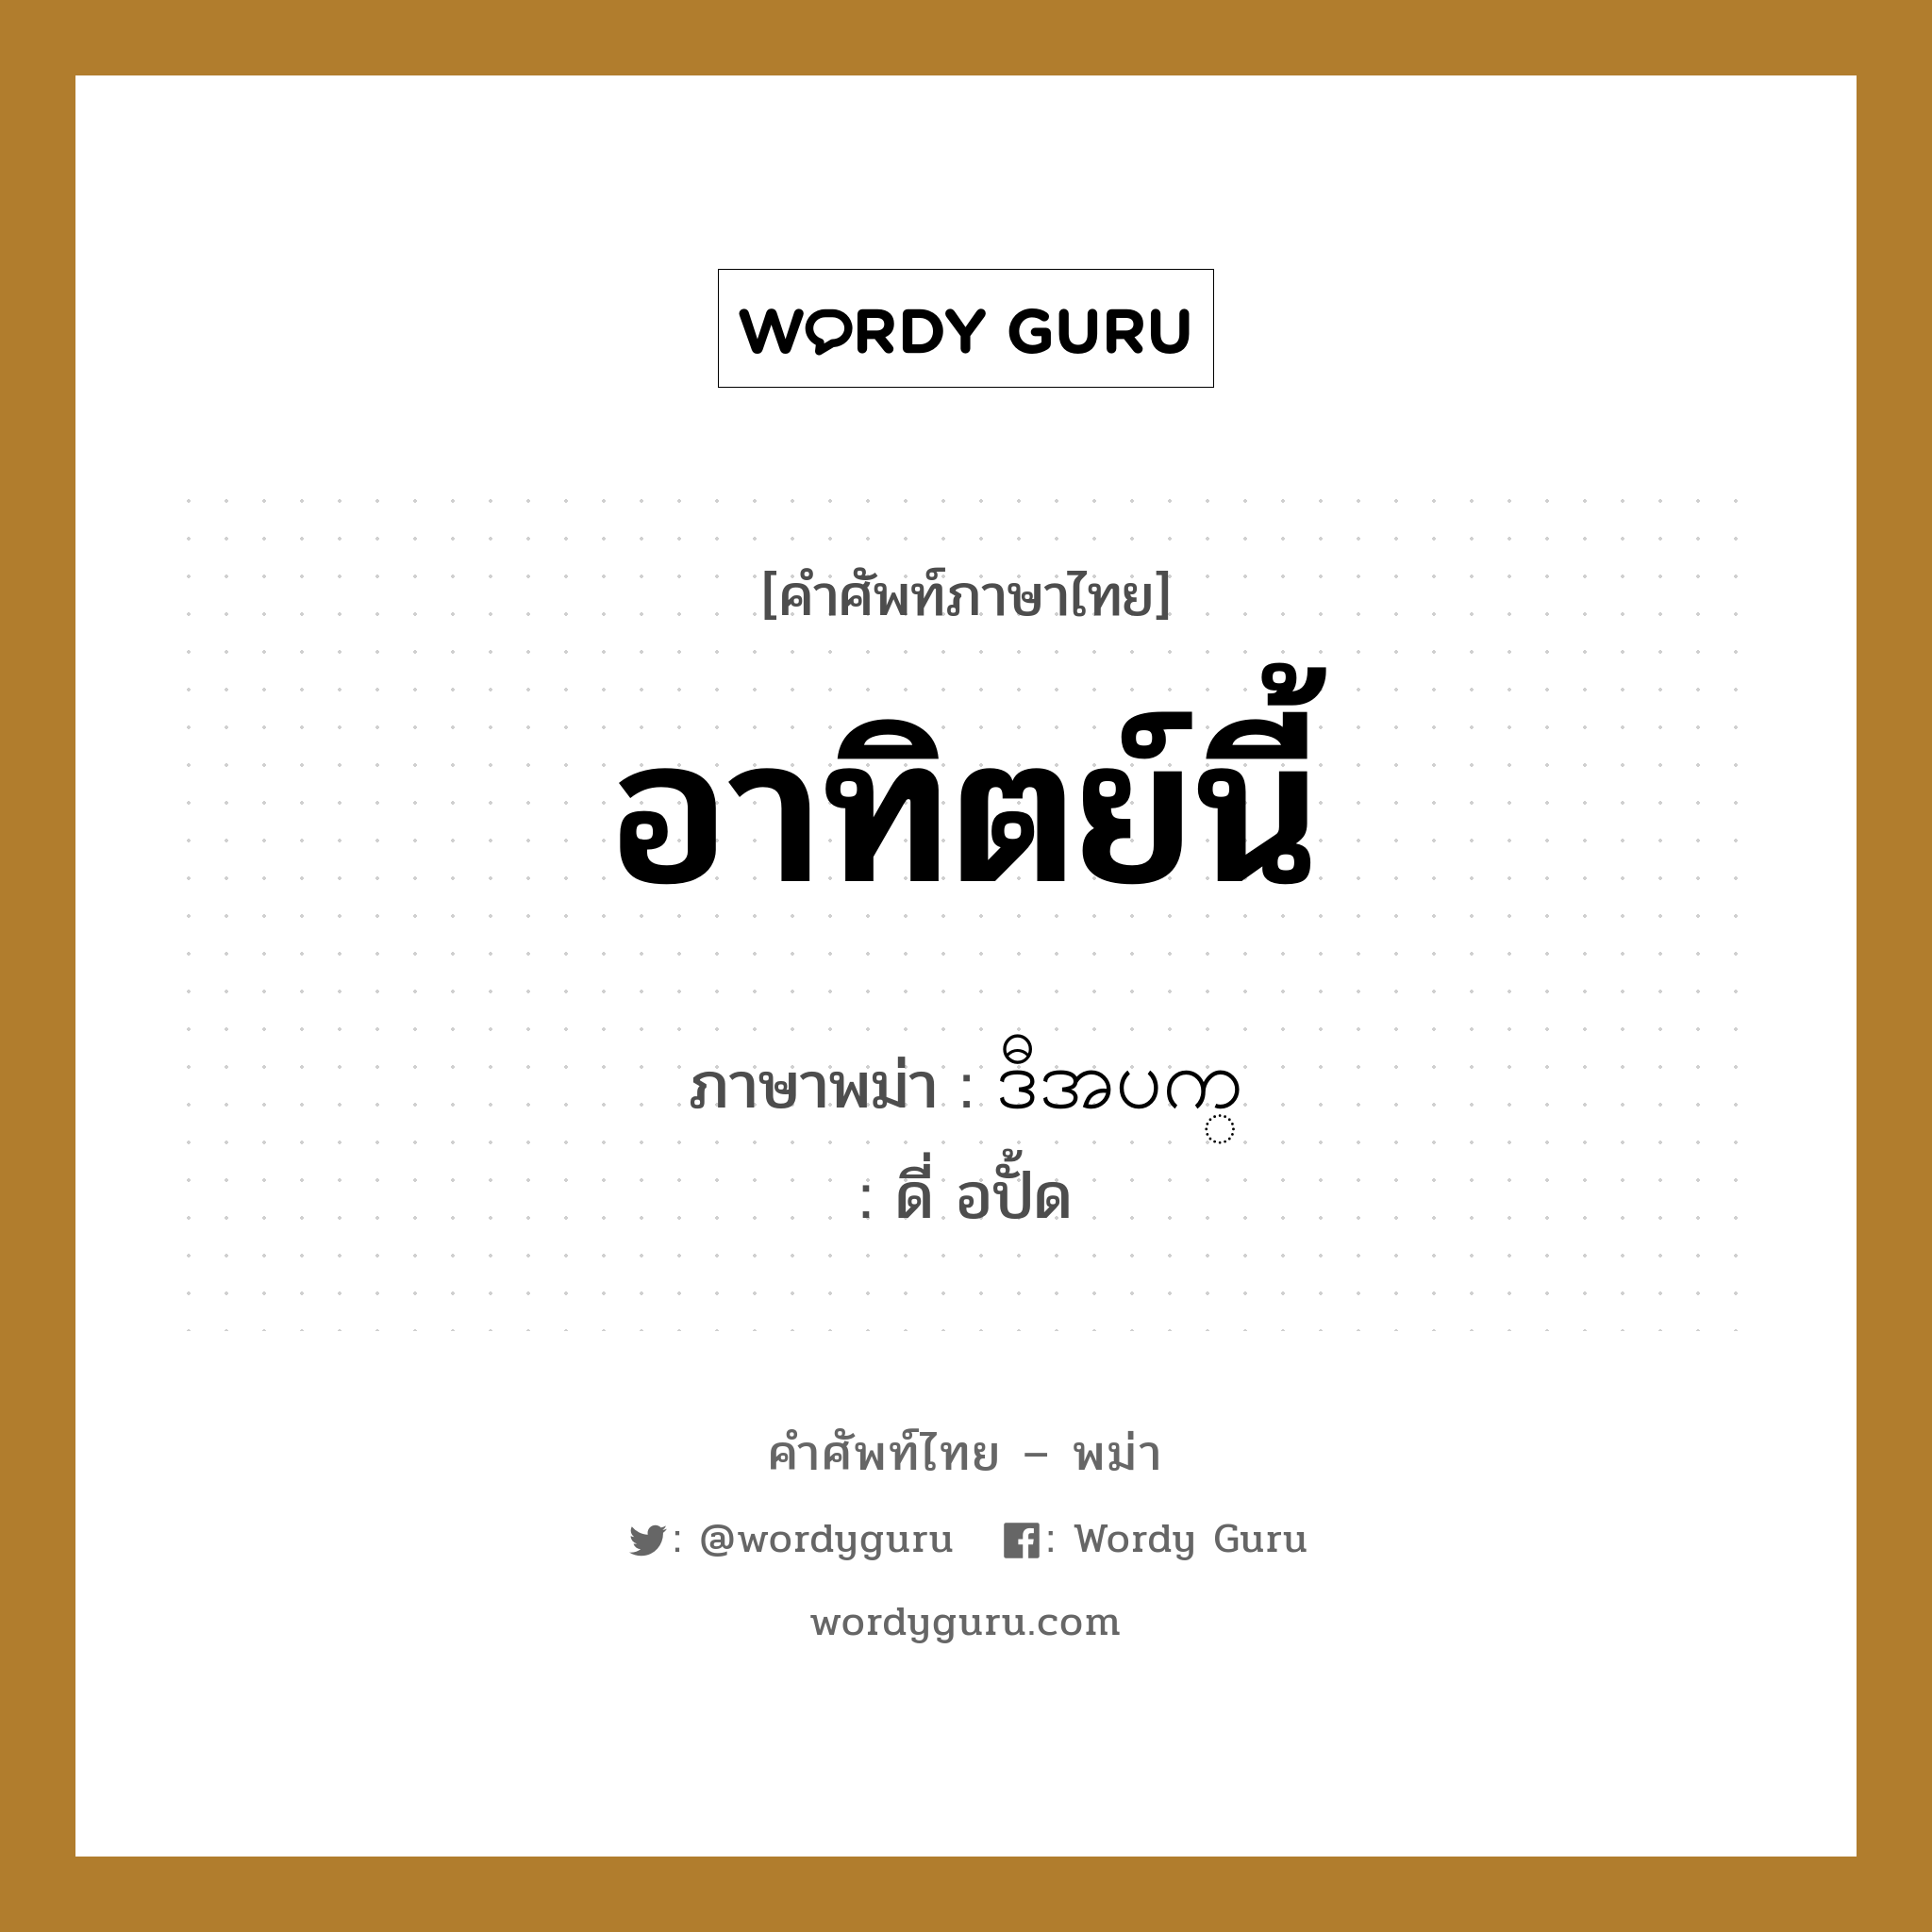 อาทิตย์นี้ ภาษาพม่าคืออะไร, คำศัพท์ภาษาไทย - พม่า อาทิตย์นี้ ภาษาพม่า ဒီအပက္ หมวด หมวดวัน เดือน ปี ดี่ อปั้ด หมวด หมวดวัน เดือน ปี